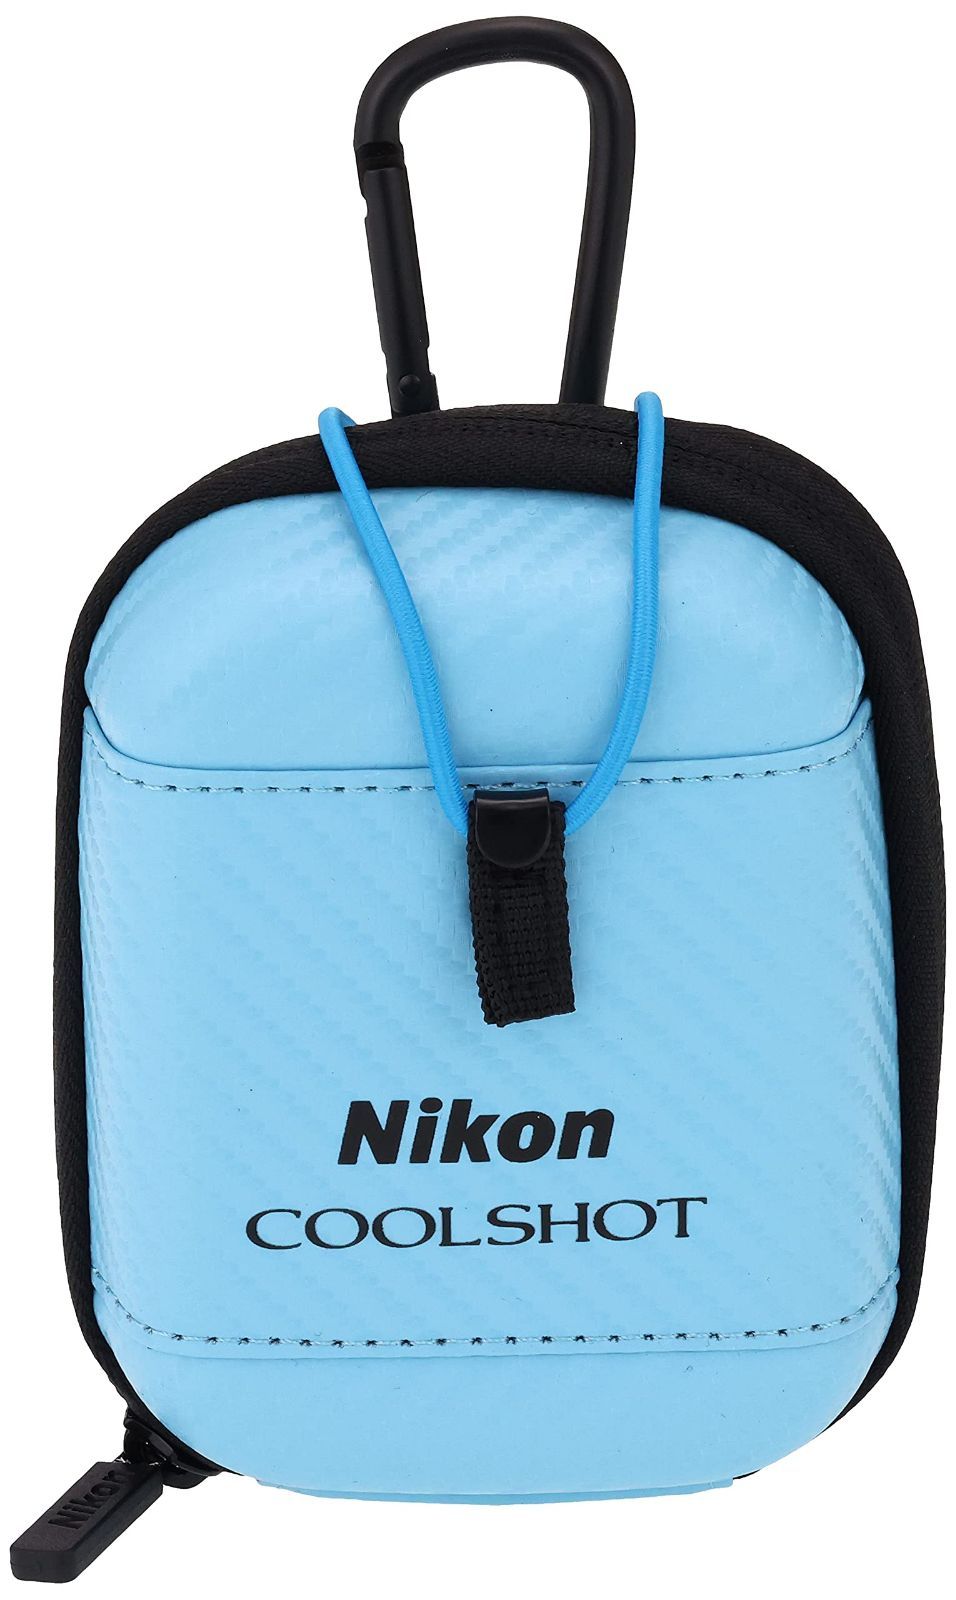 円高還元 Nikon ゴルフ用レーザー距離計 COOLSHOT用ハードケース CS